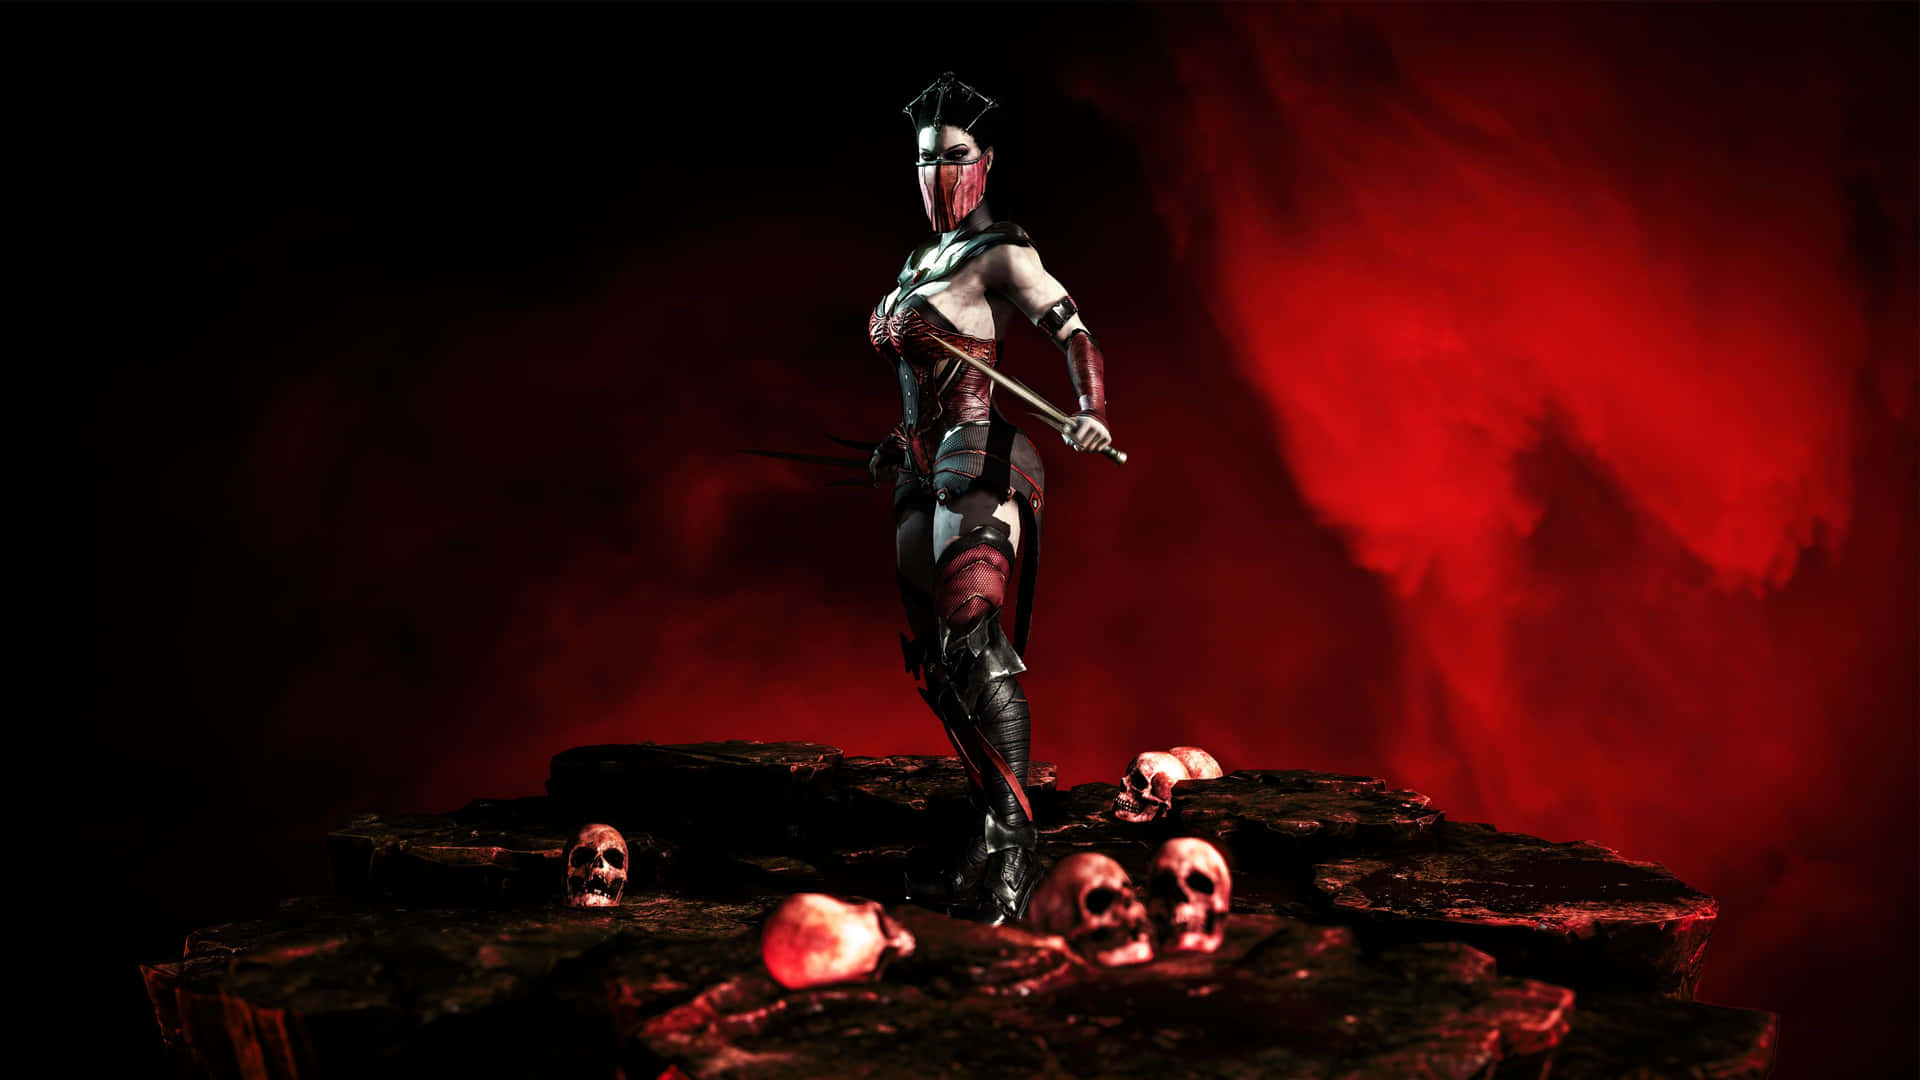 Fierce Mileena from Mortal Kombat in breathtaking action Wallpaper